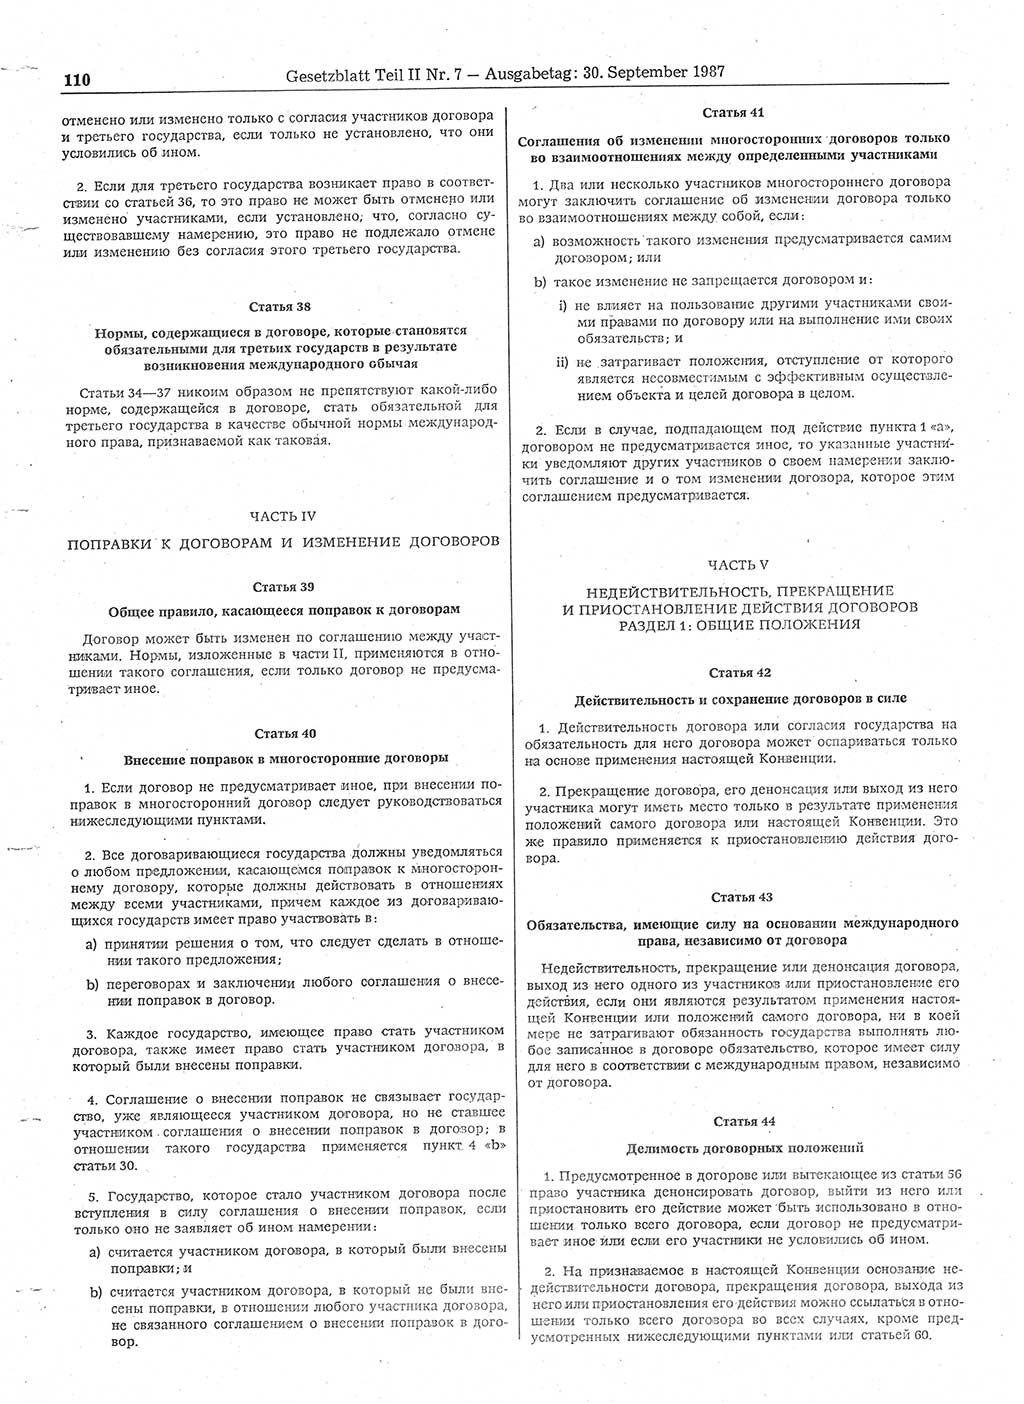 Gesetzblatt (GBl.) der Deutschen Demokratischen Republik (DDR) Teil ⅠⅠ 1987, Seite 110 (GBl. DDR ⅠⅠ 1987, S. 110)